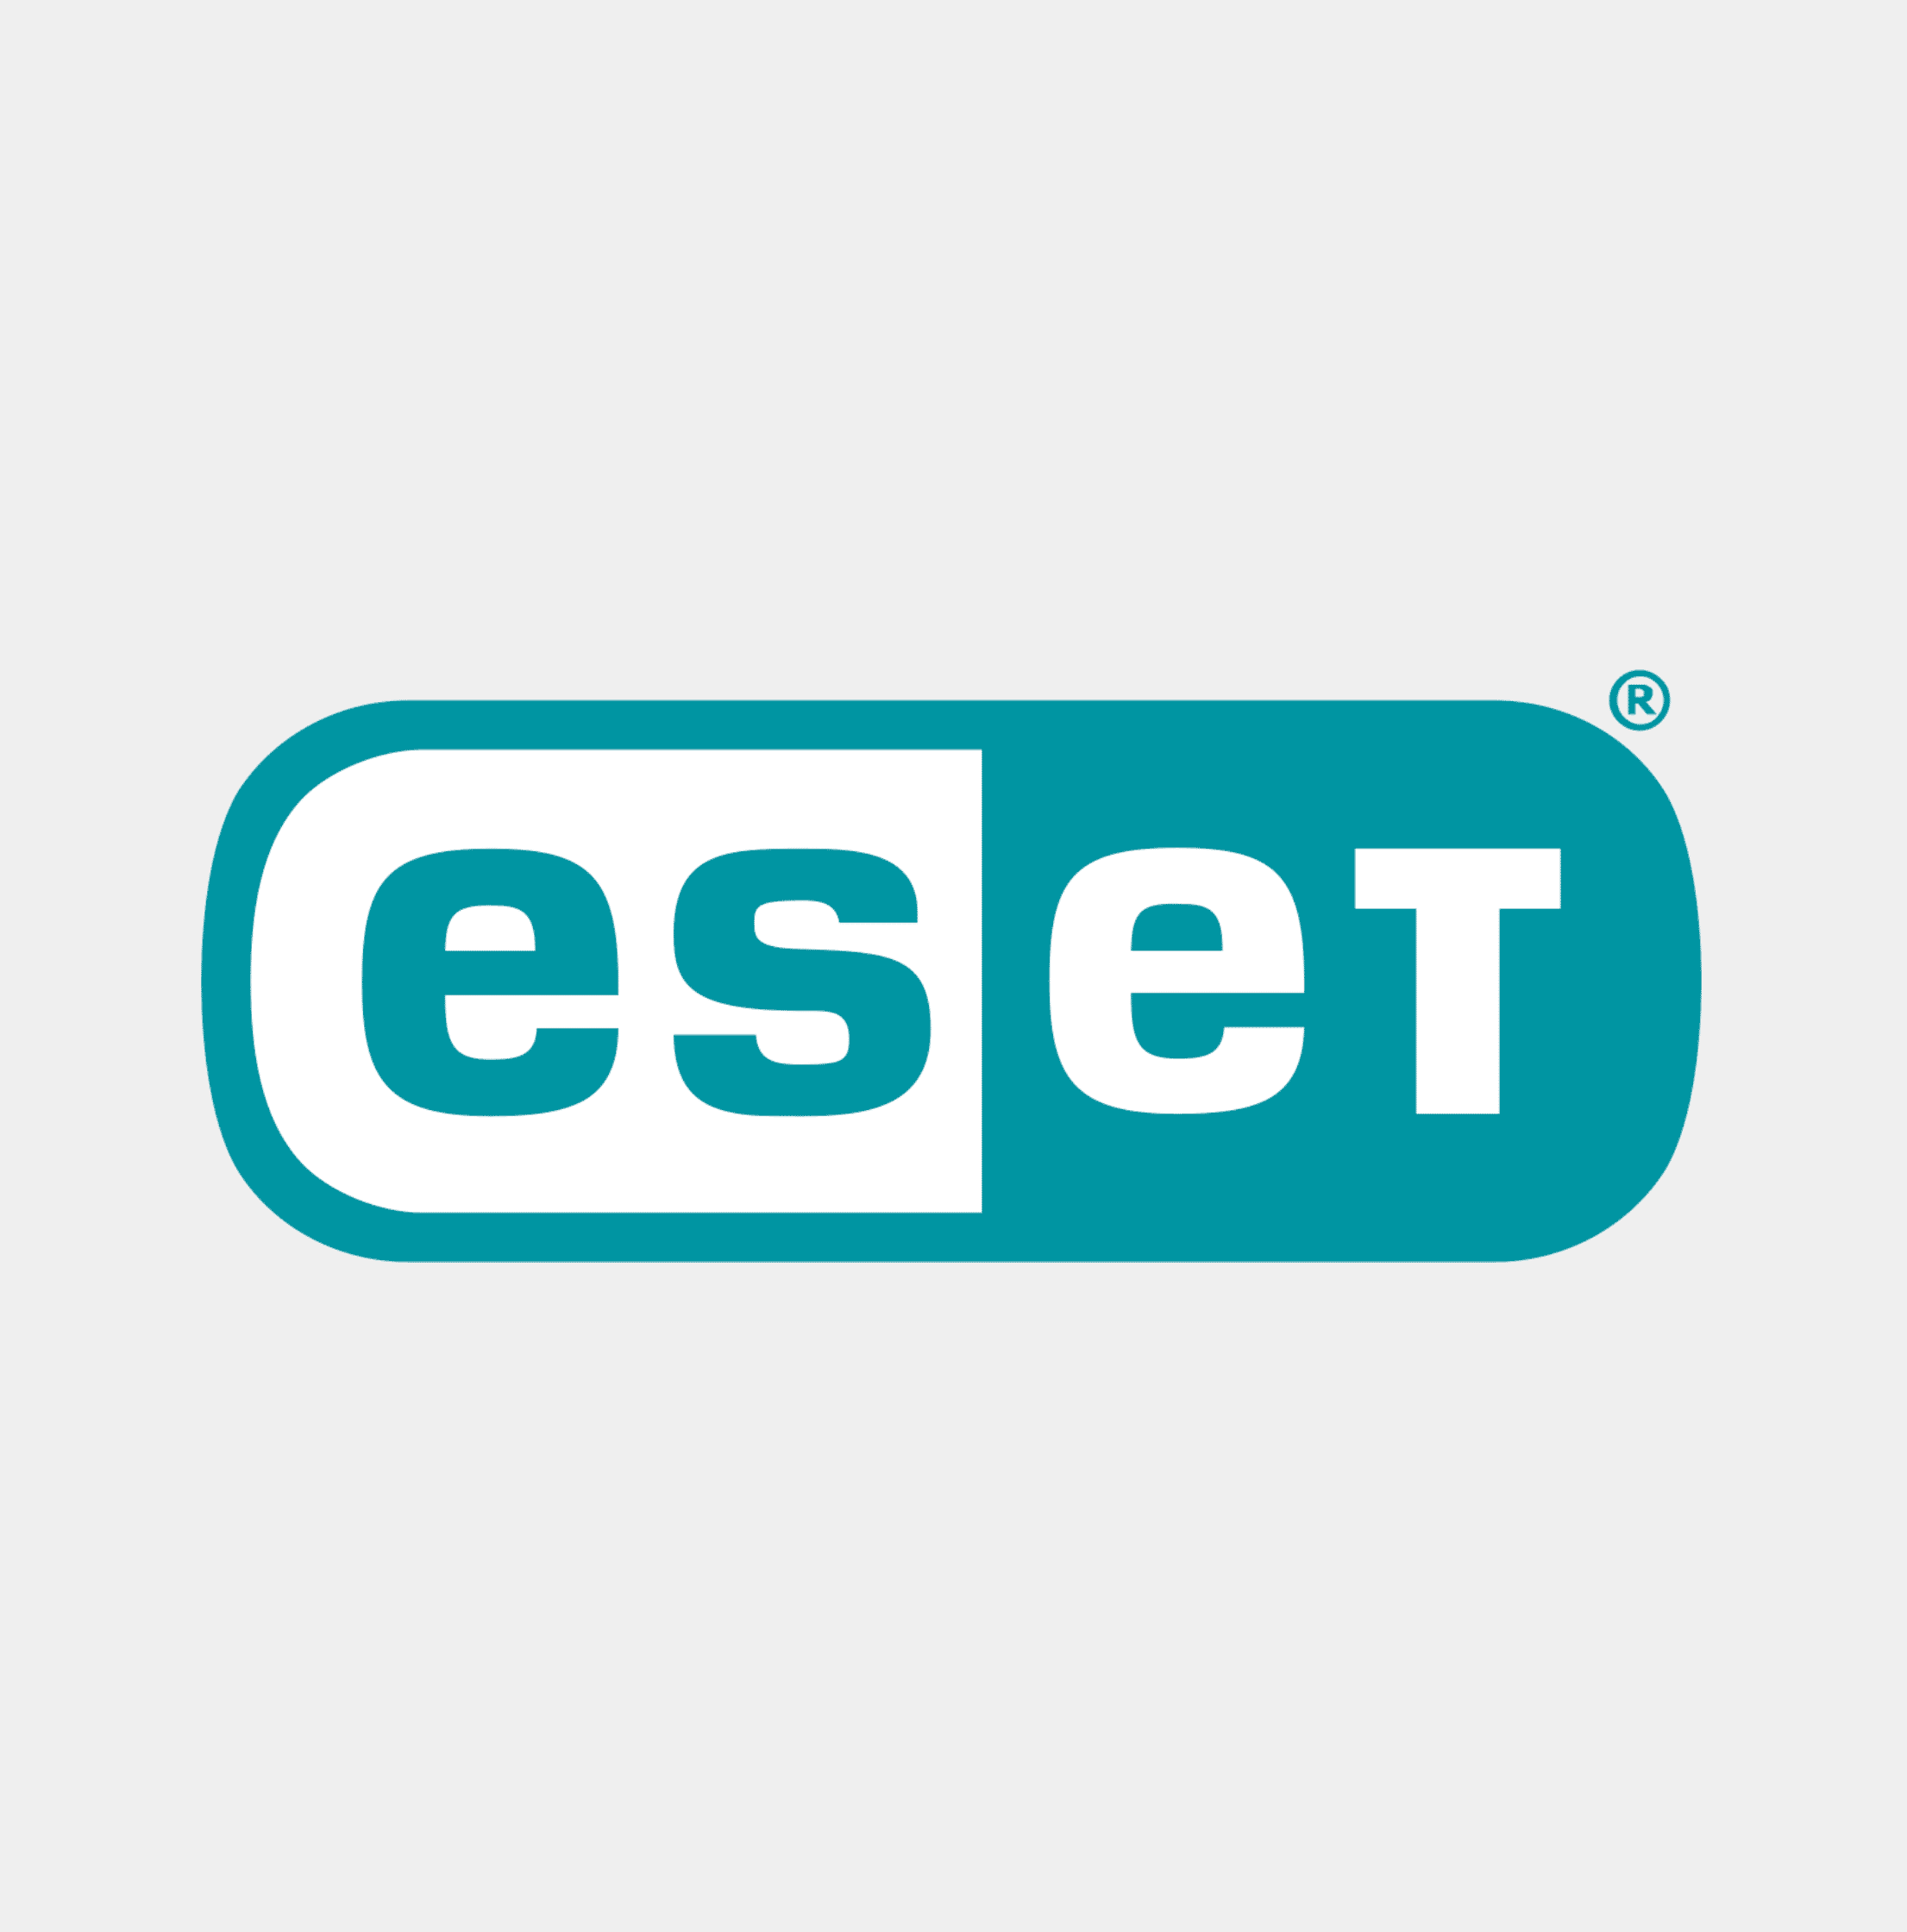 The logo for ESET.